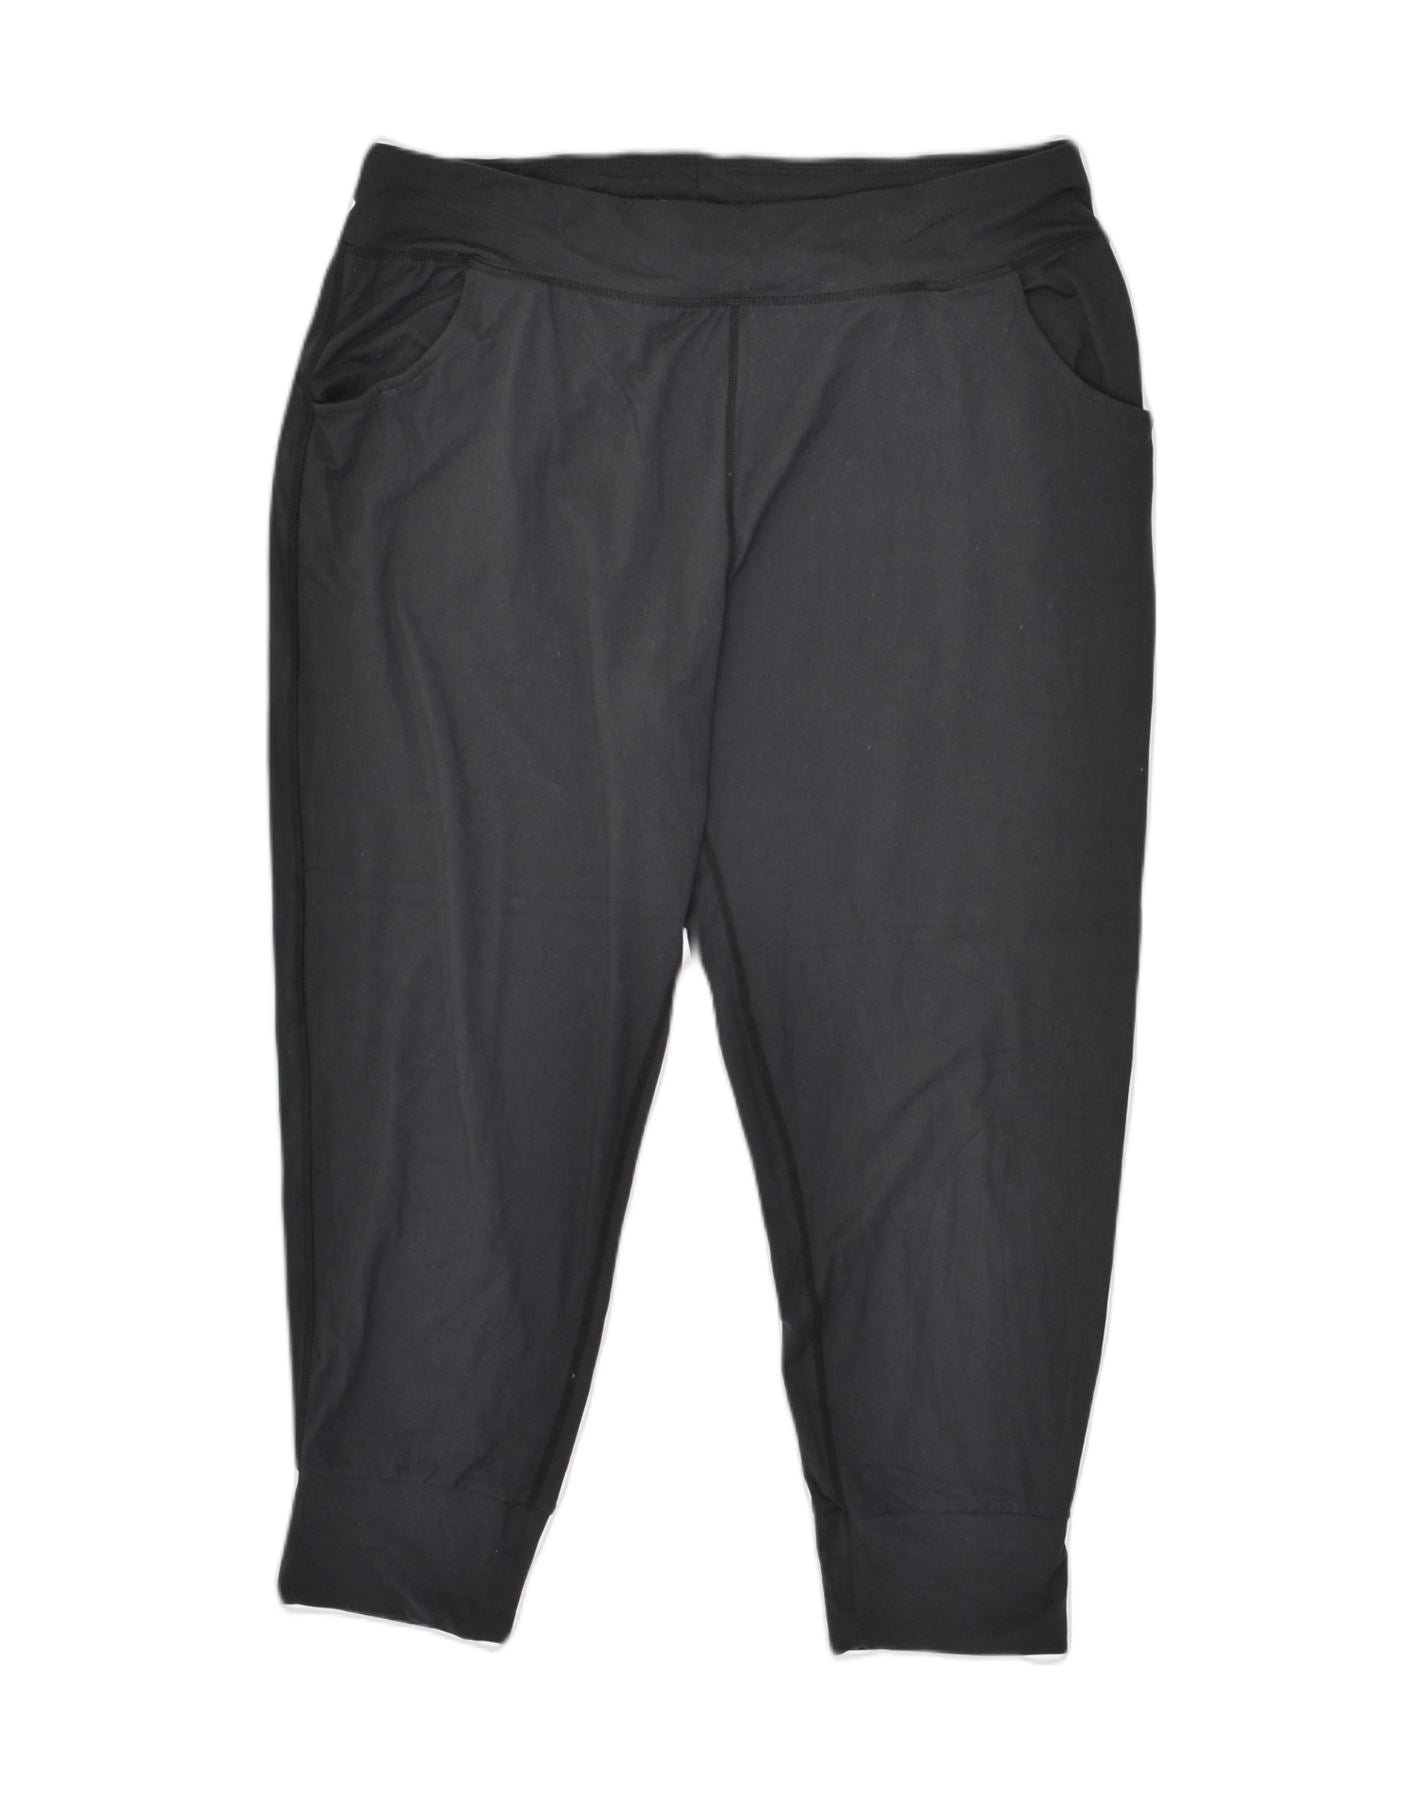 MOUNTAIN WAREHOUSE Womens Capri Tracksuit Trousers Joggers UK 16 Large Black